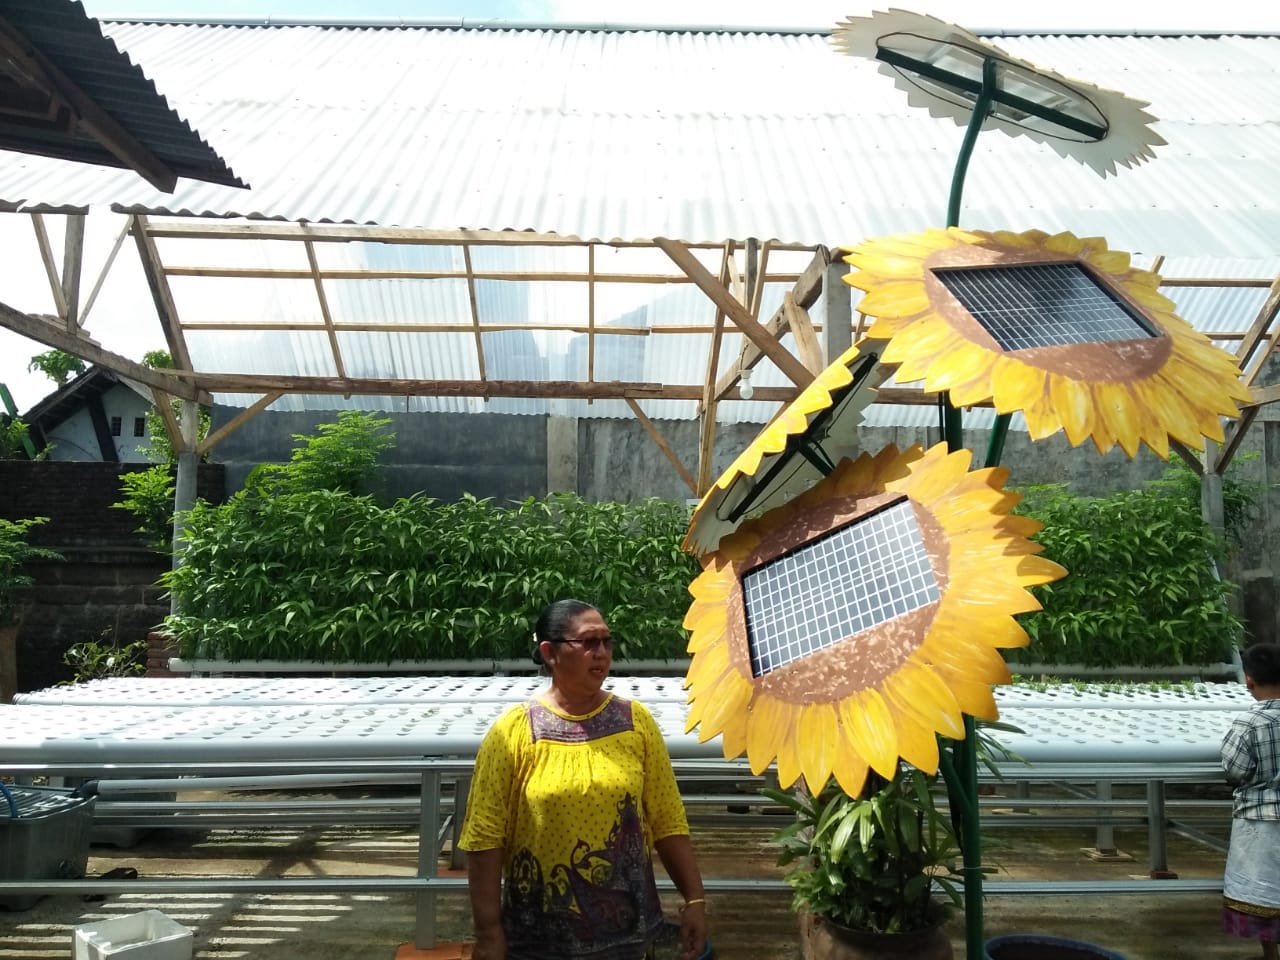 Rangkaian panel surya yang dibentuk seperti bunga matahari sebagai sumber energi penggerak pompa irigasi hidroponik | Foto: Luh De Suriyani/Mongabay Indonesia